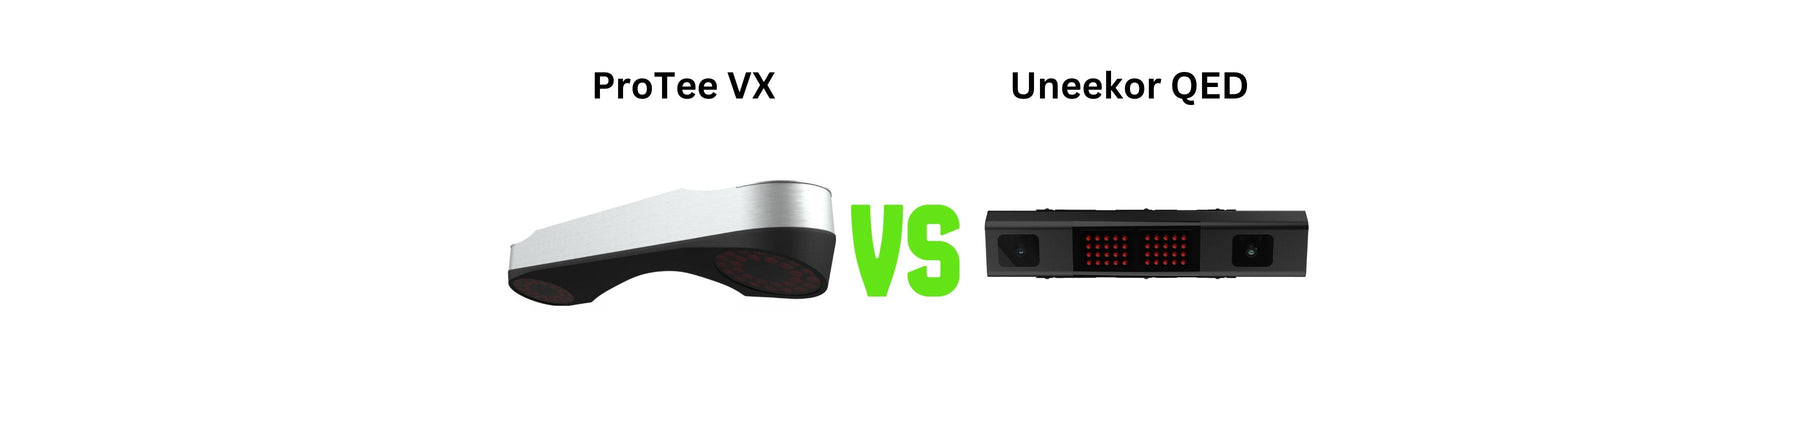 A Comprehensive Comparison of ProTee VX vs. Uneekor QED Golf Simulators